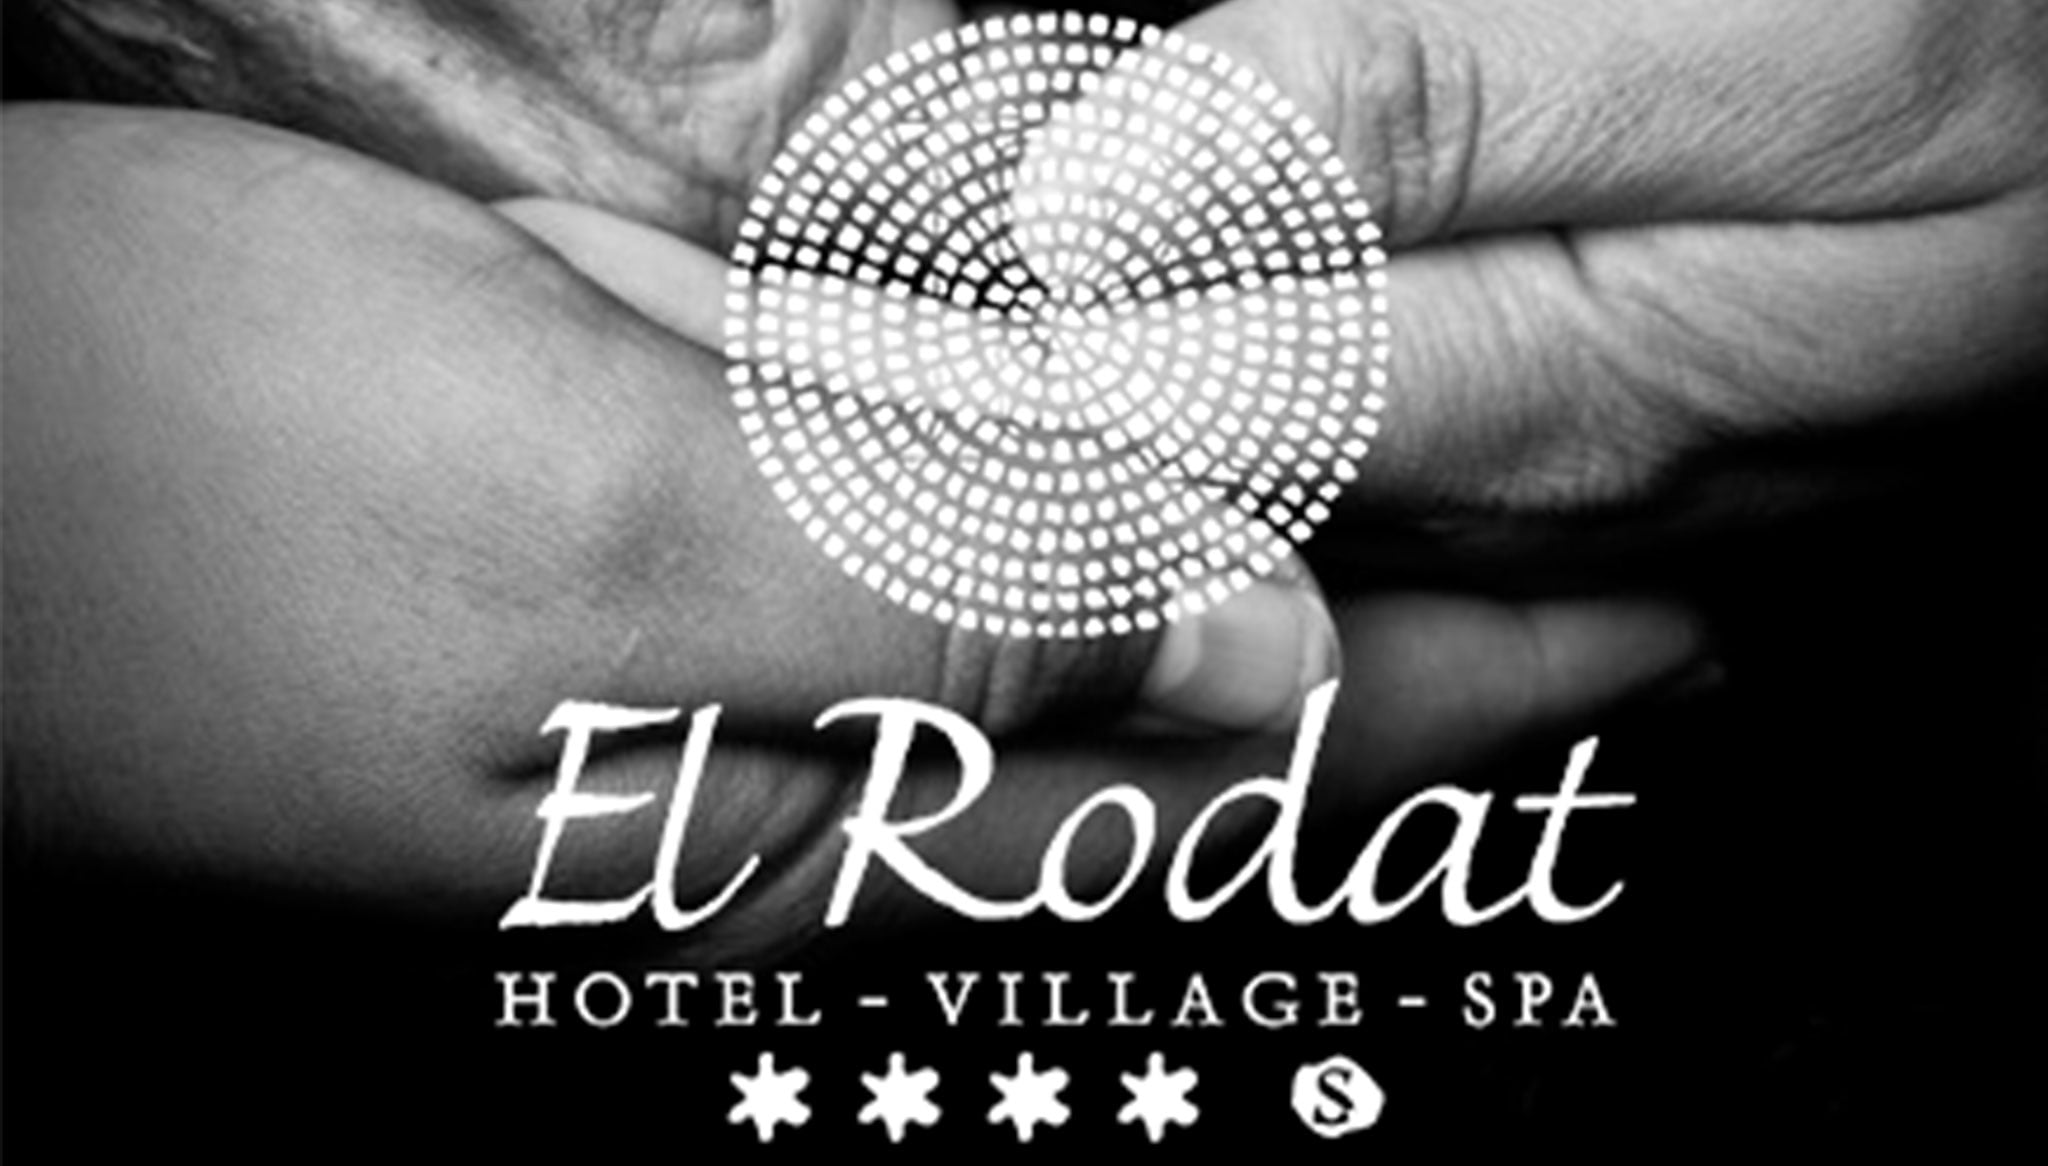 Comunicado de Hotel El Rodat cediendo sus instalaciones ante la alarma sanitaria